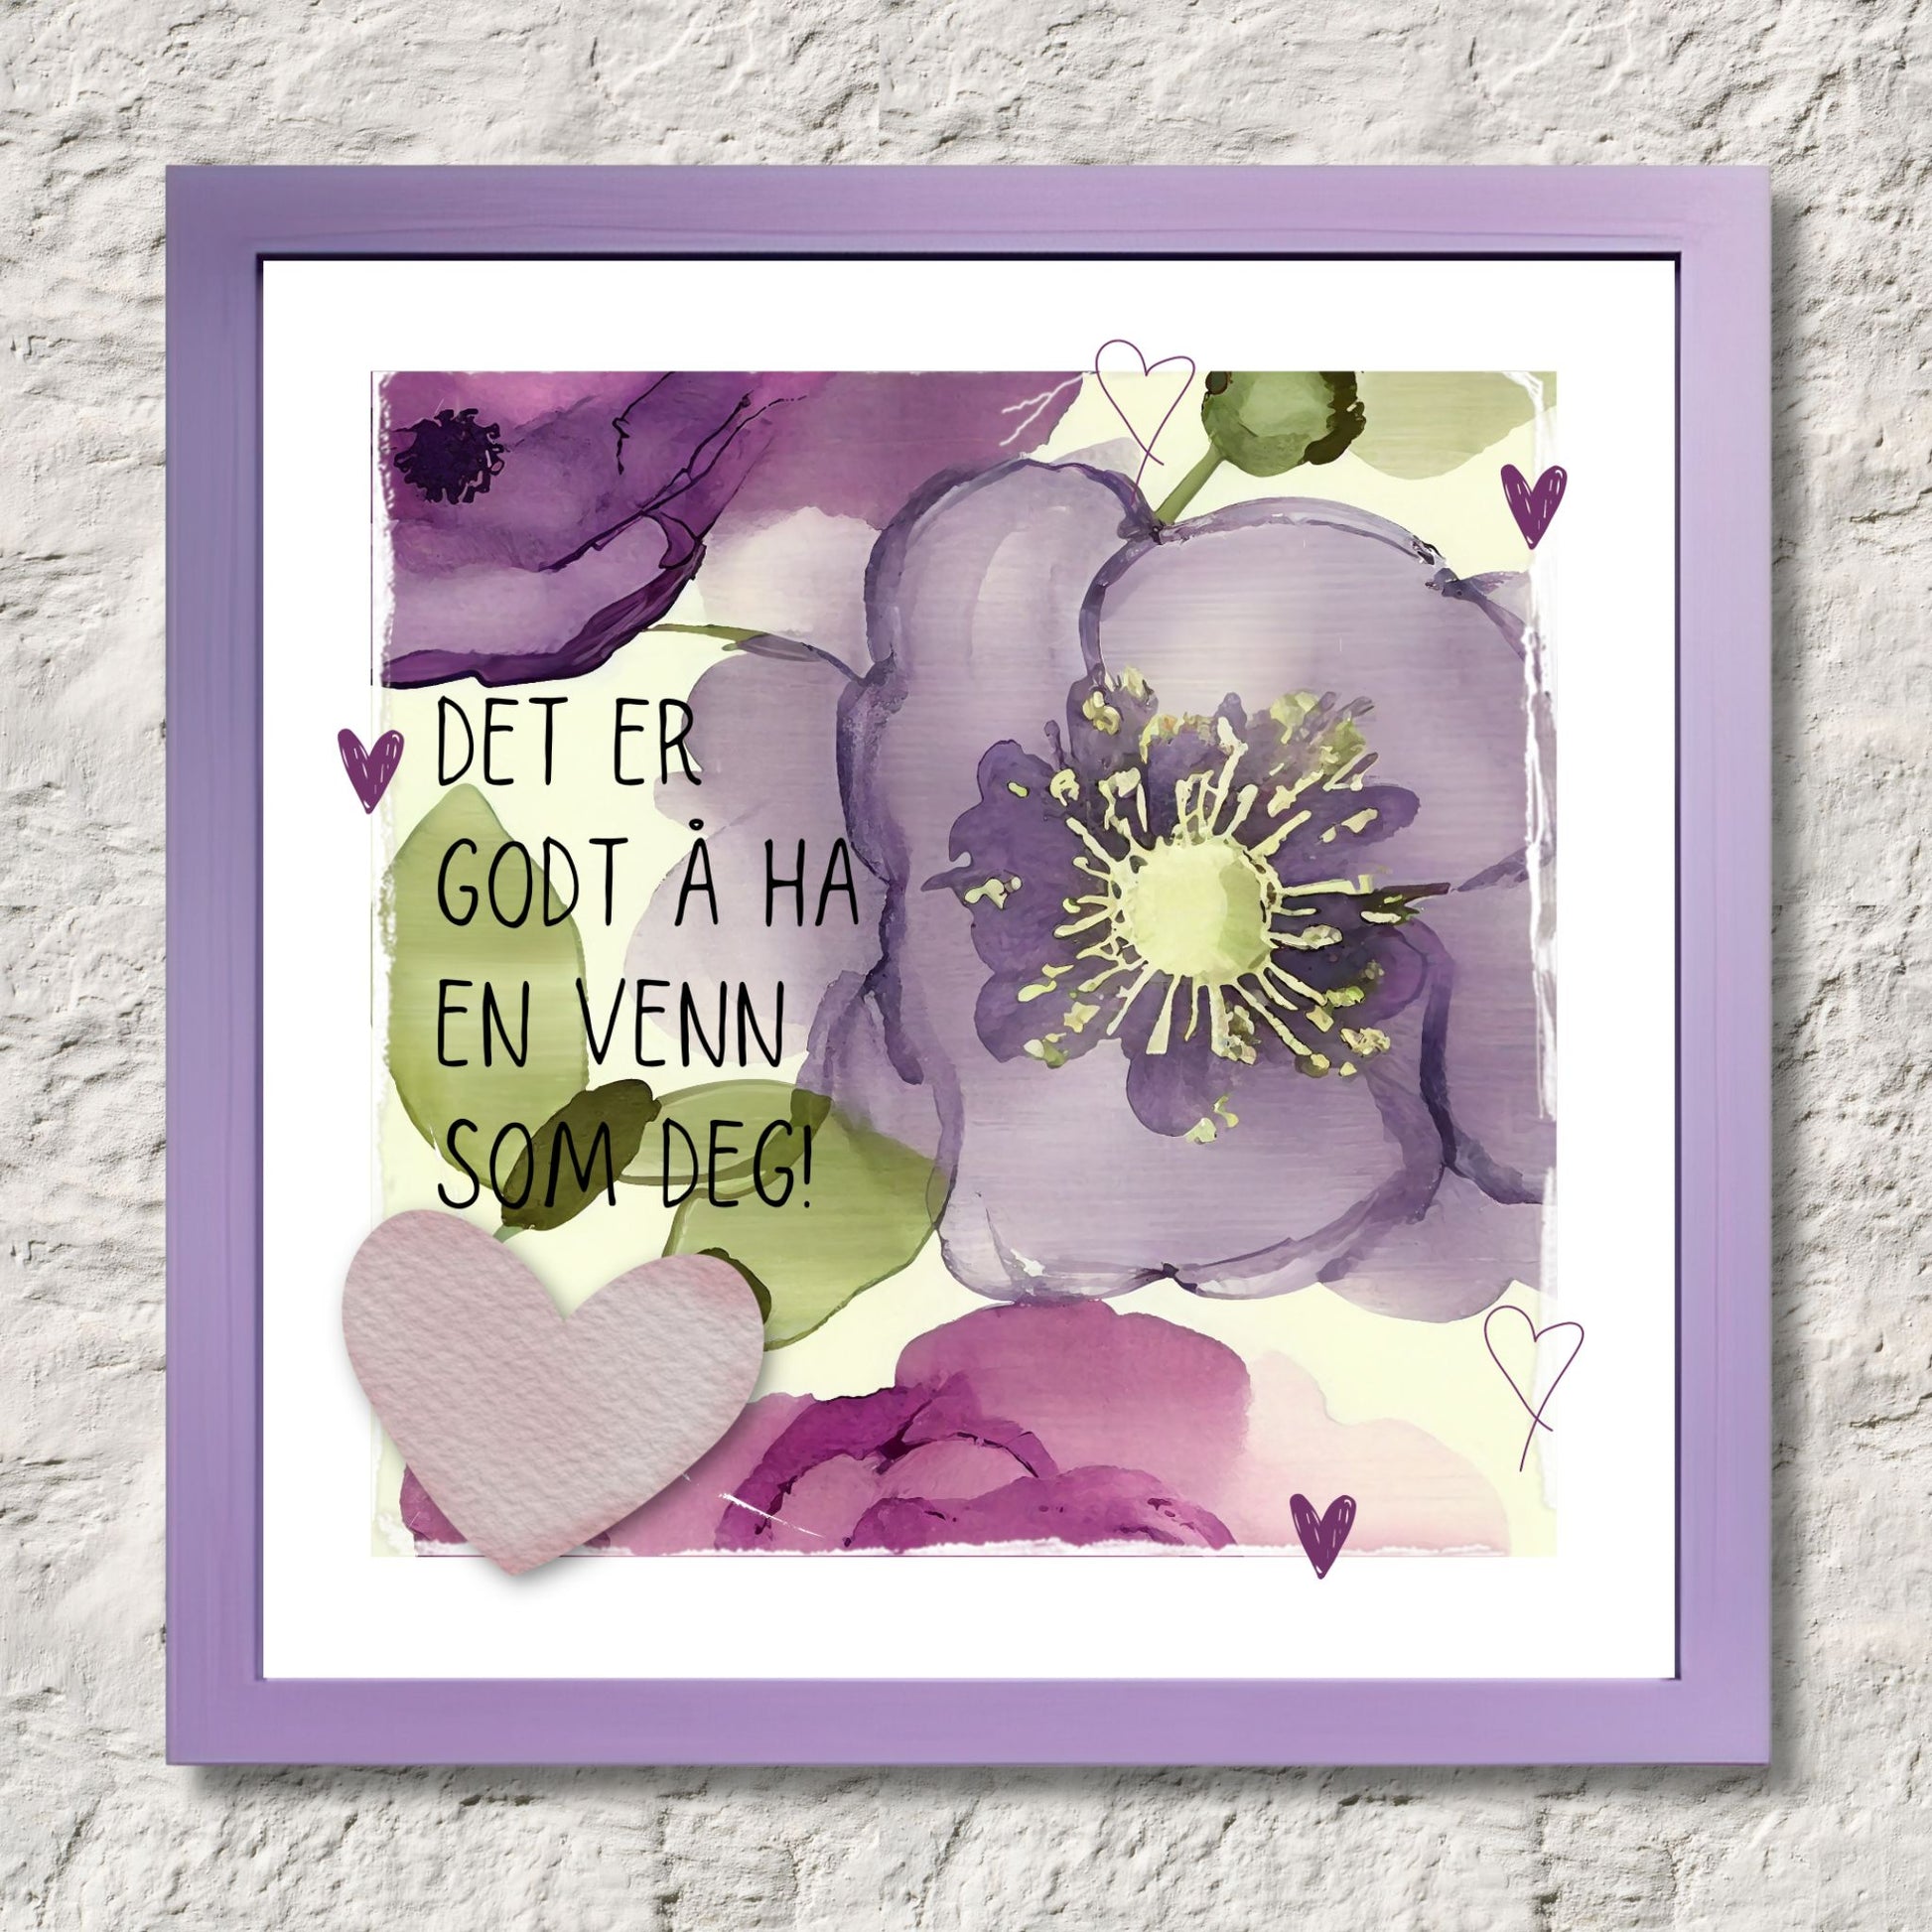 Go'ord plakat med teksten "Det er godt å ha en venn som deg" på en bakgrunn med blomstermotiv i lilla, burgunder og grønt. Illustrasjon som viser plakat i ramme.